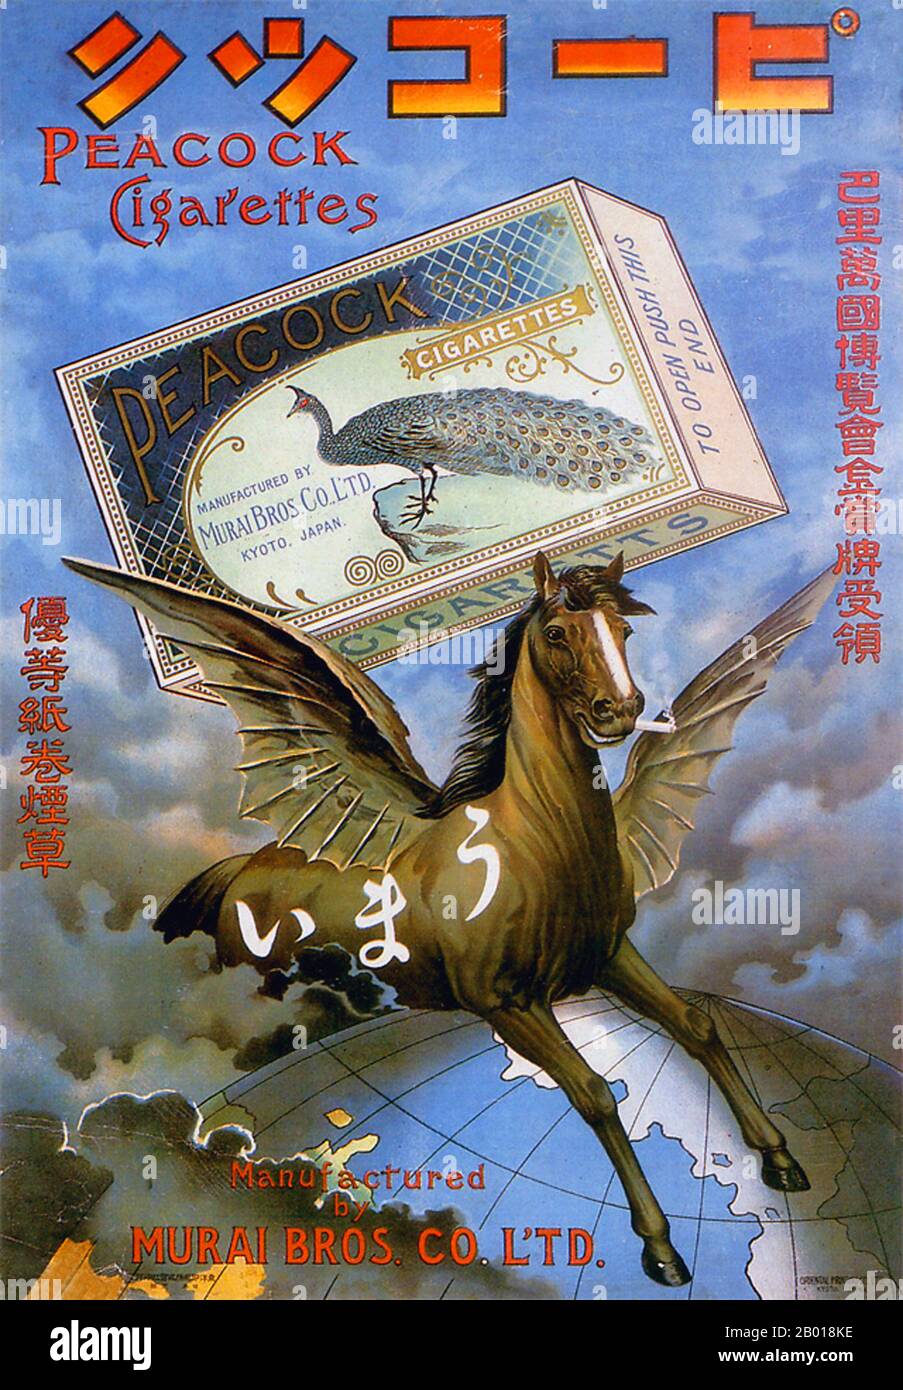 Japan: Werbeplakat für Pfau Zigaretten, c. 1902. Ein fliegendes Pferd - mehr pegasus als Pfau wirbt für die Vorzüge von Pfau-Zigaretten. Stockfoto